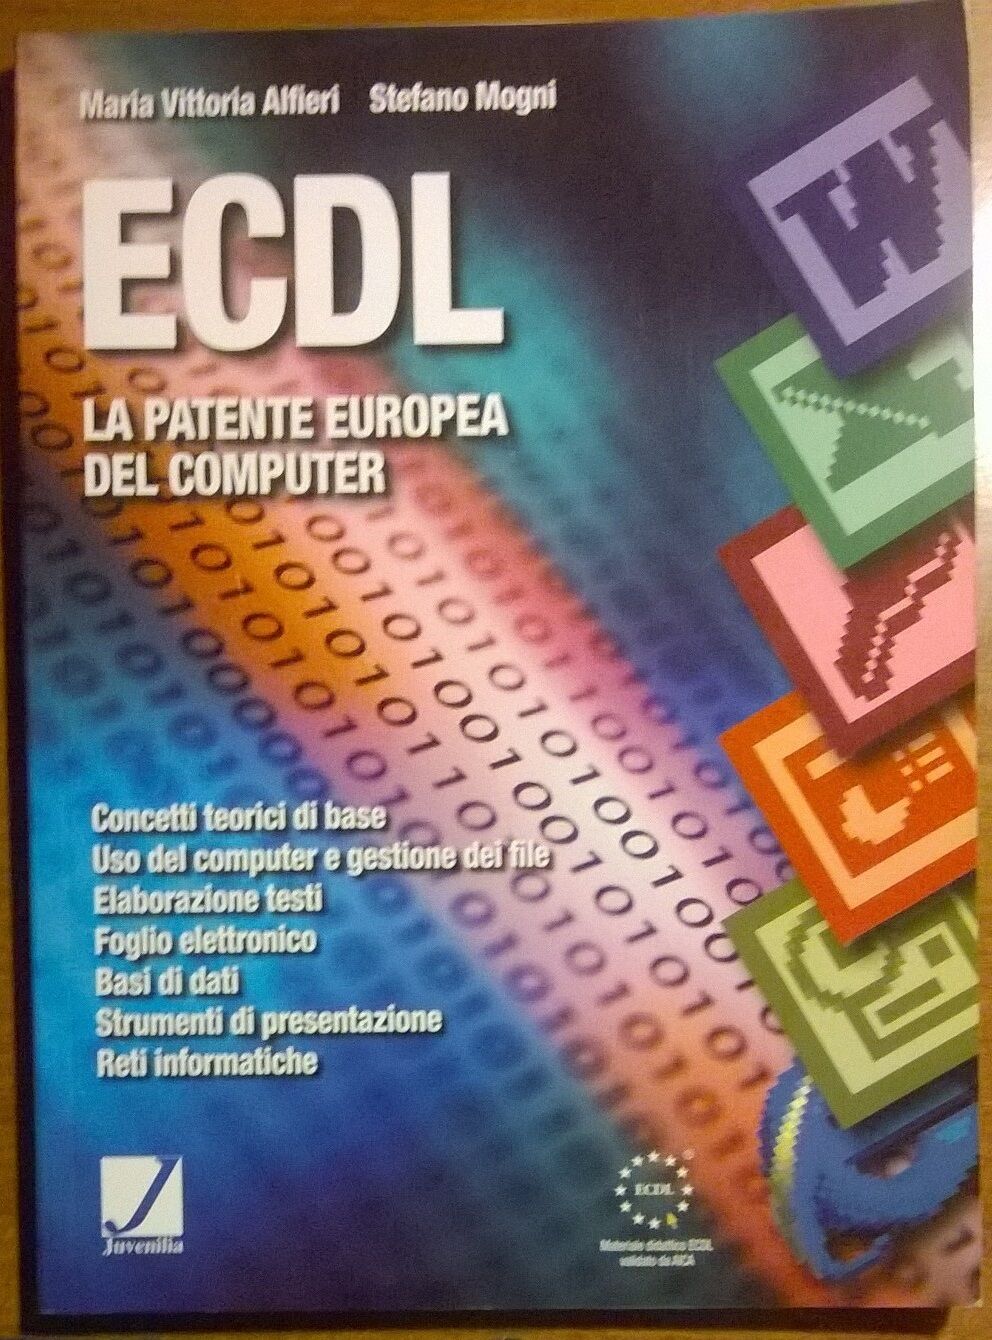 ECDL La patente europea del computer - Alfieri, Mogni - Juvenilia, 2002 - L